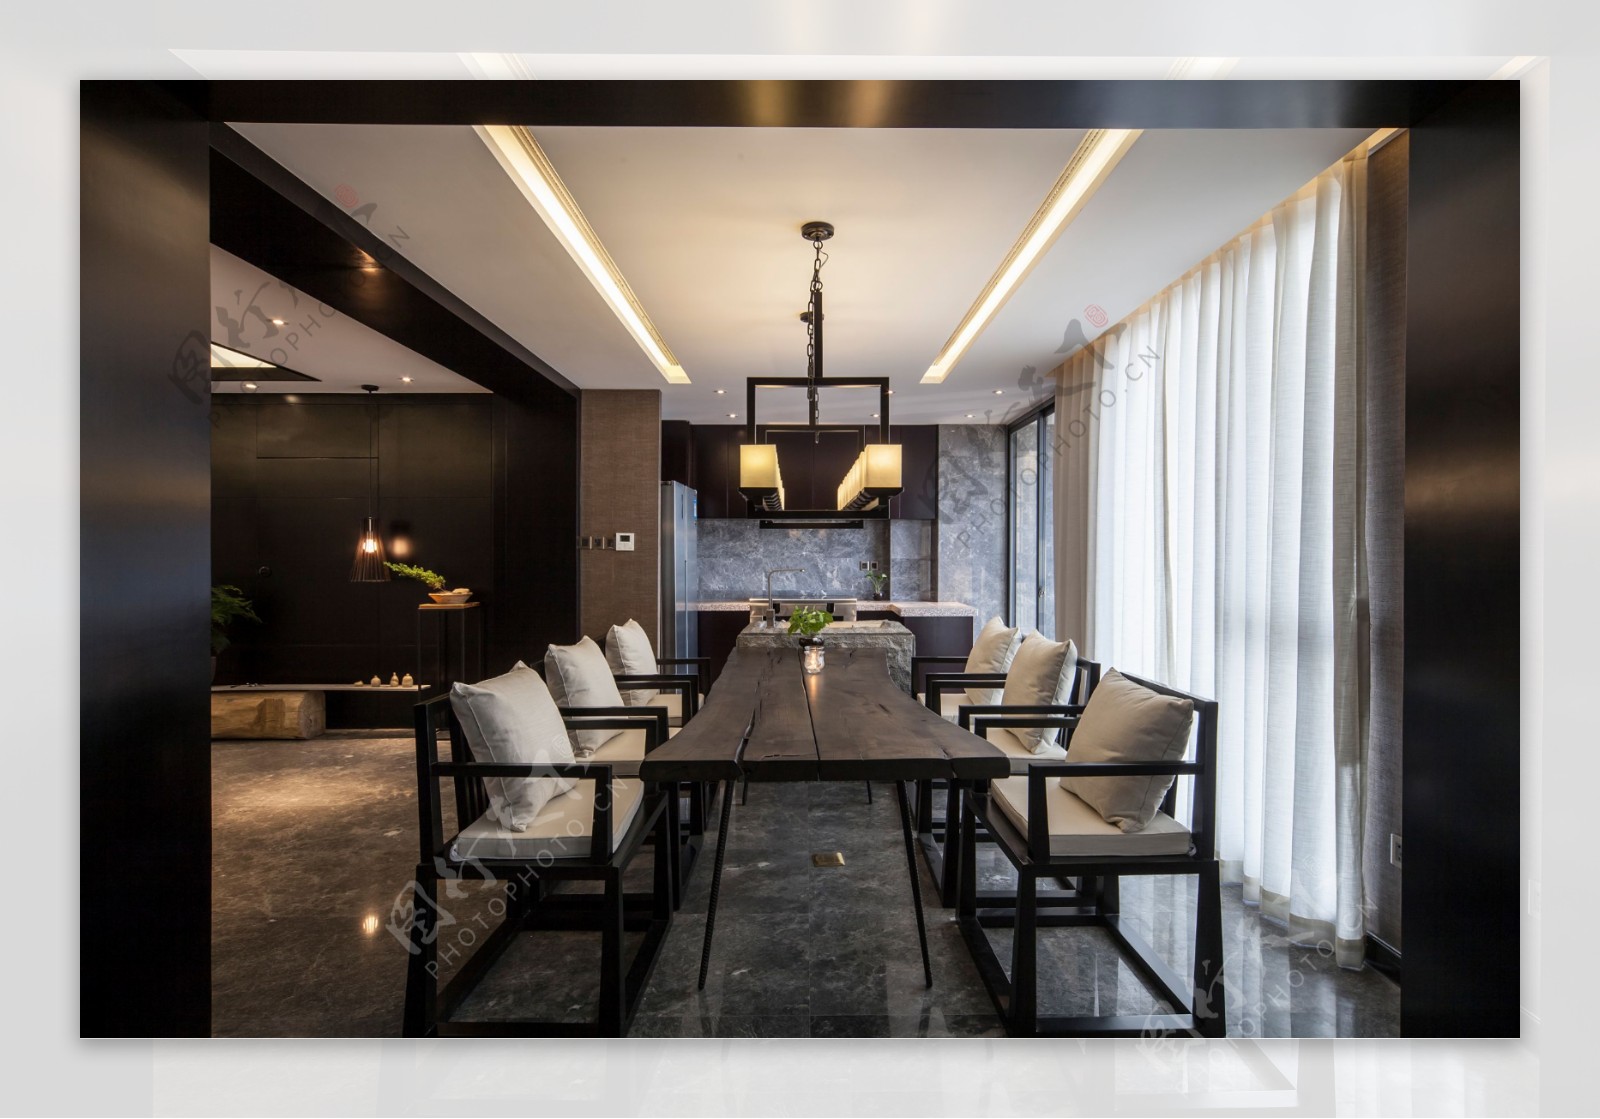 中式风格六人长方形餐厅餐桌装修效果图- 中国风